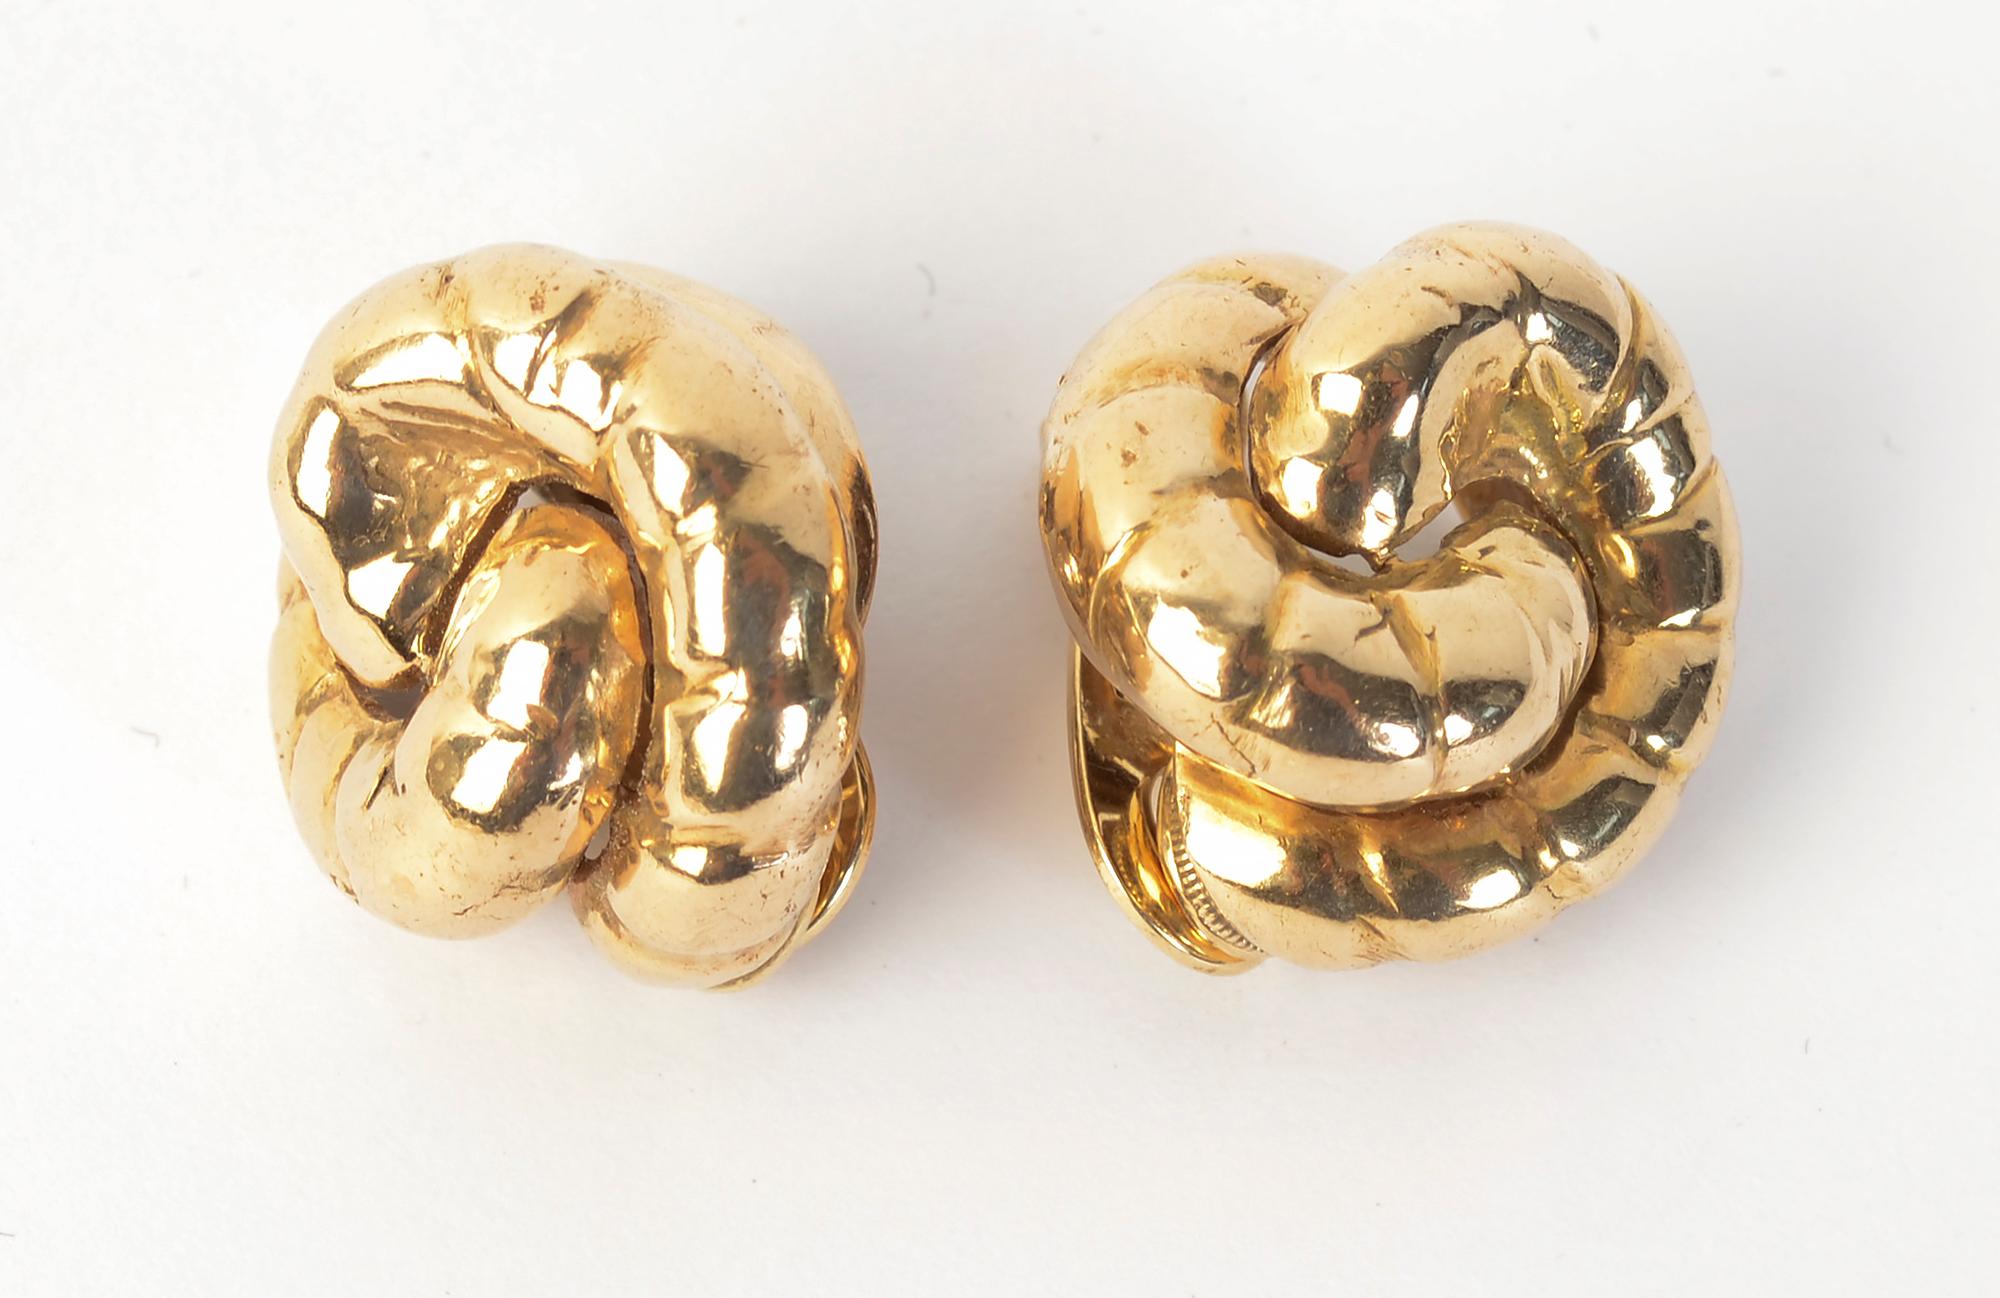 Deux demi-cercles s'enlacent dans ces boucles d'oreilles en or 14 carats de Seaman Schepps. Chaque demi-cercle présente plusieurs stries pour donner un peu de texture.
Les boucles d'oreilles sont dotées d'un clip qui peut être converti en poteau.